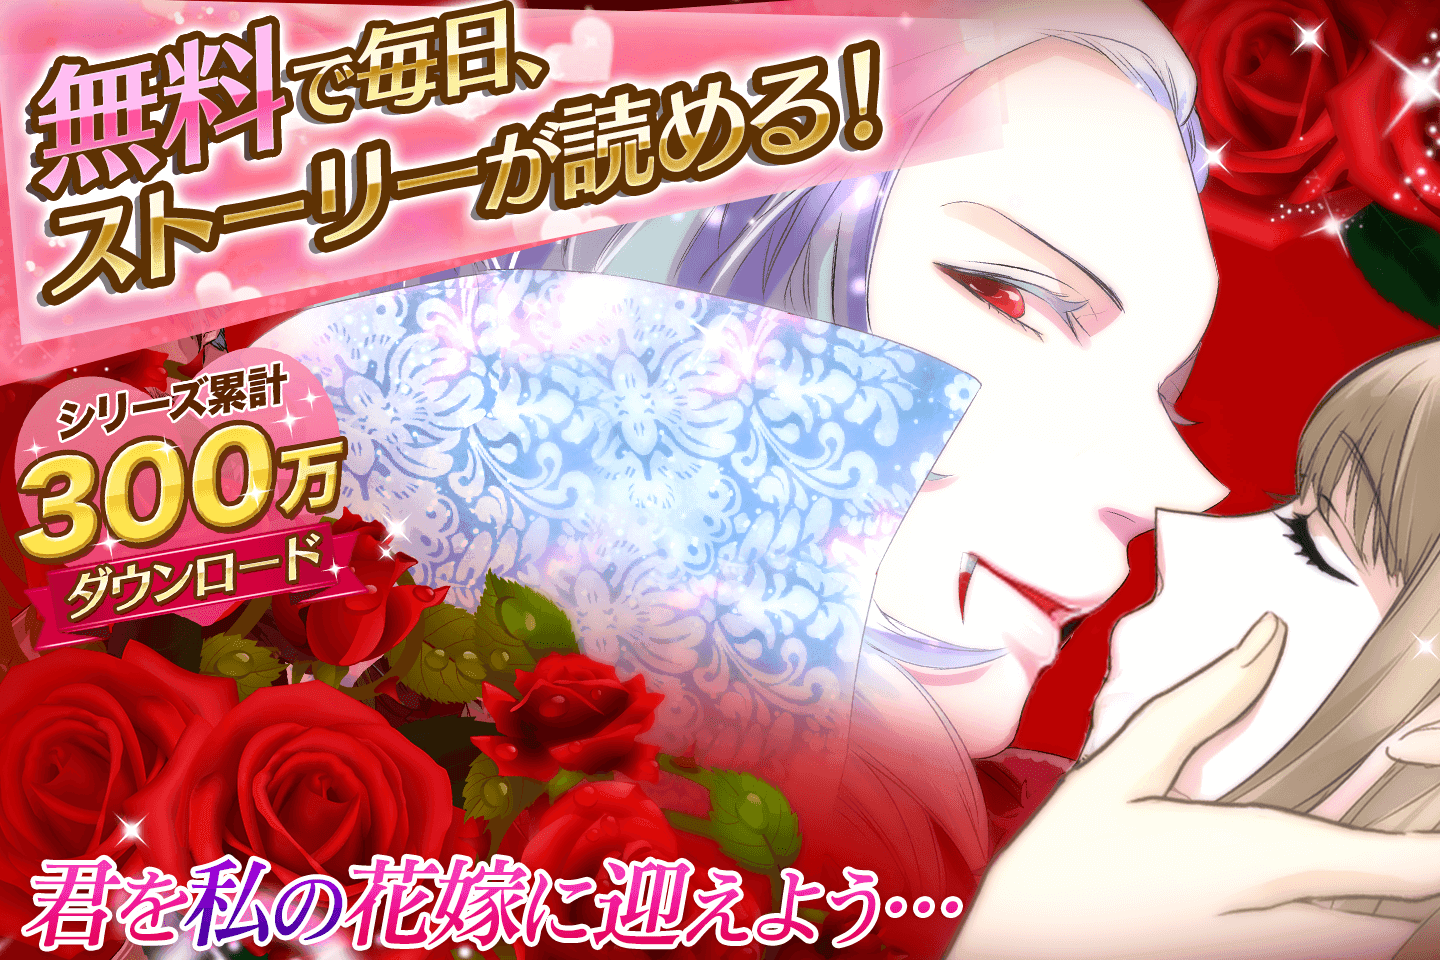 Screenshot 1 of Vampire Kiss Permainan asmara gratis untuk wanita! Game Otome populer 1.6.1